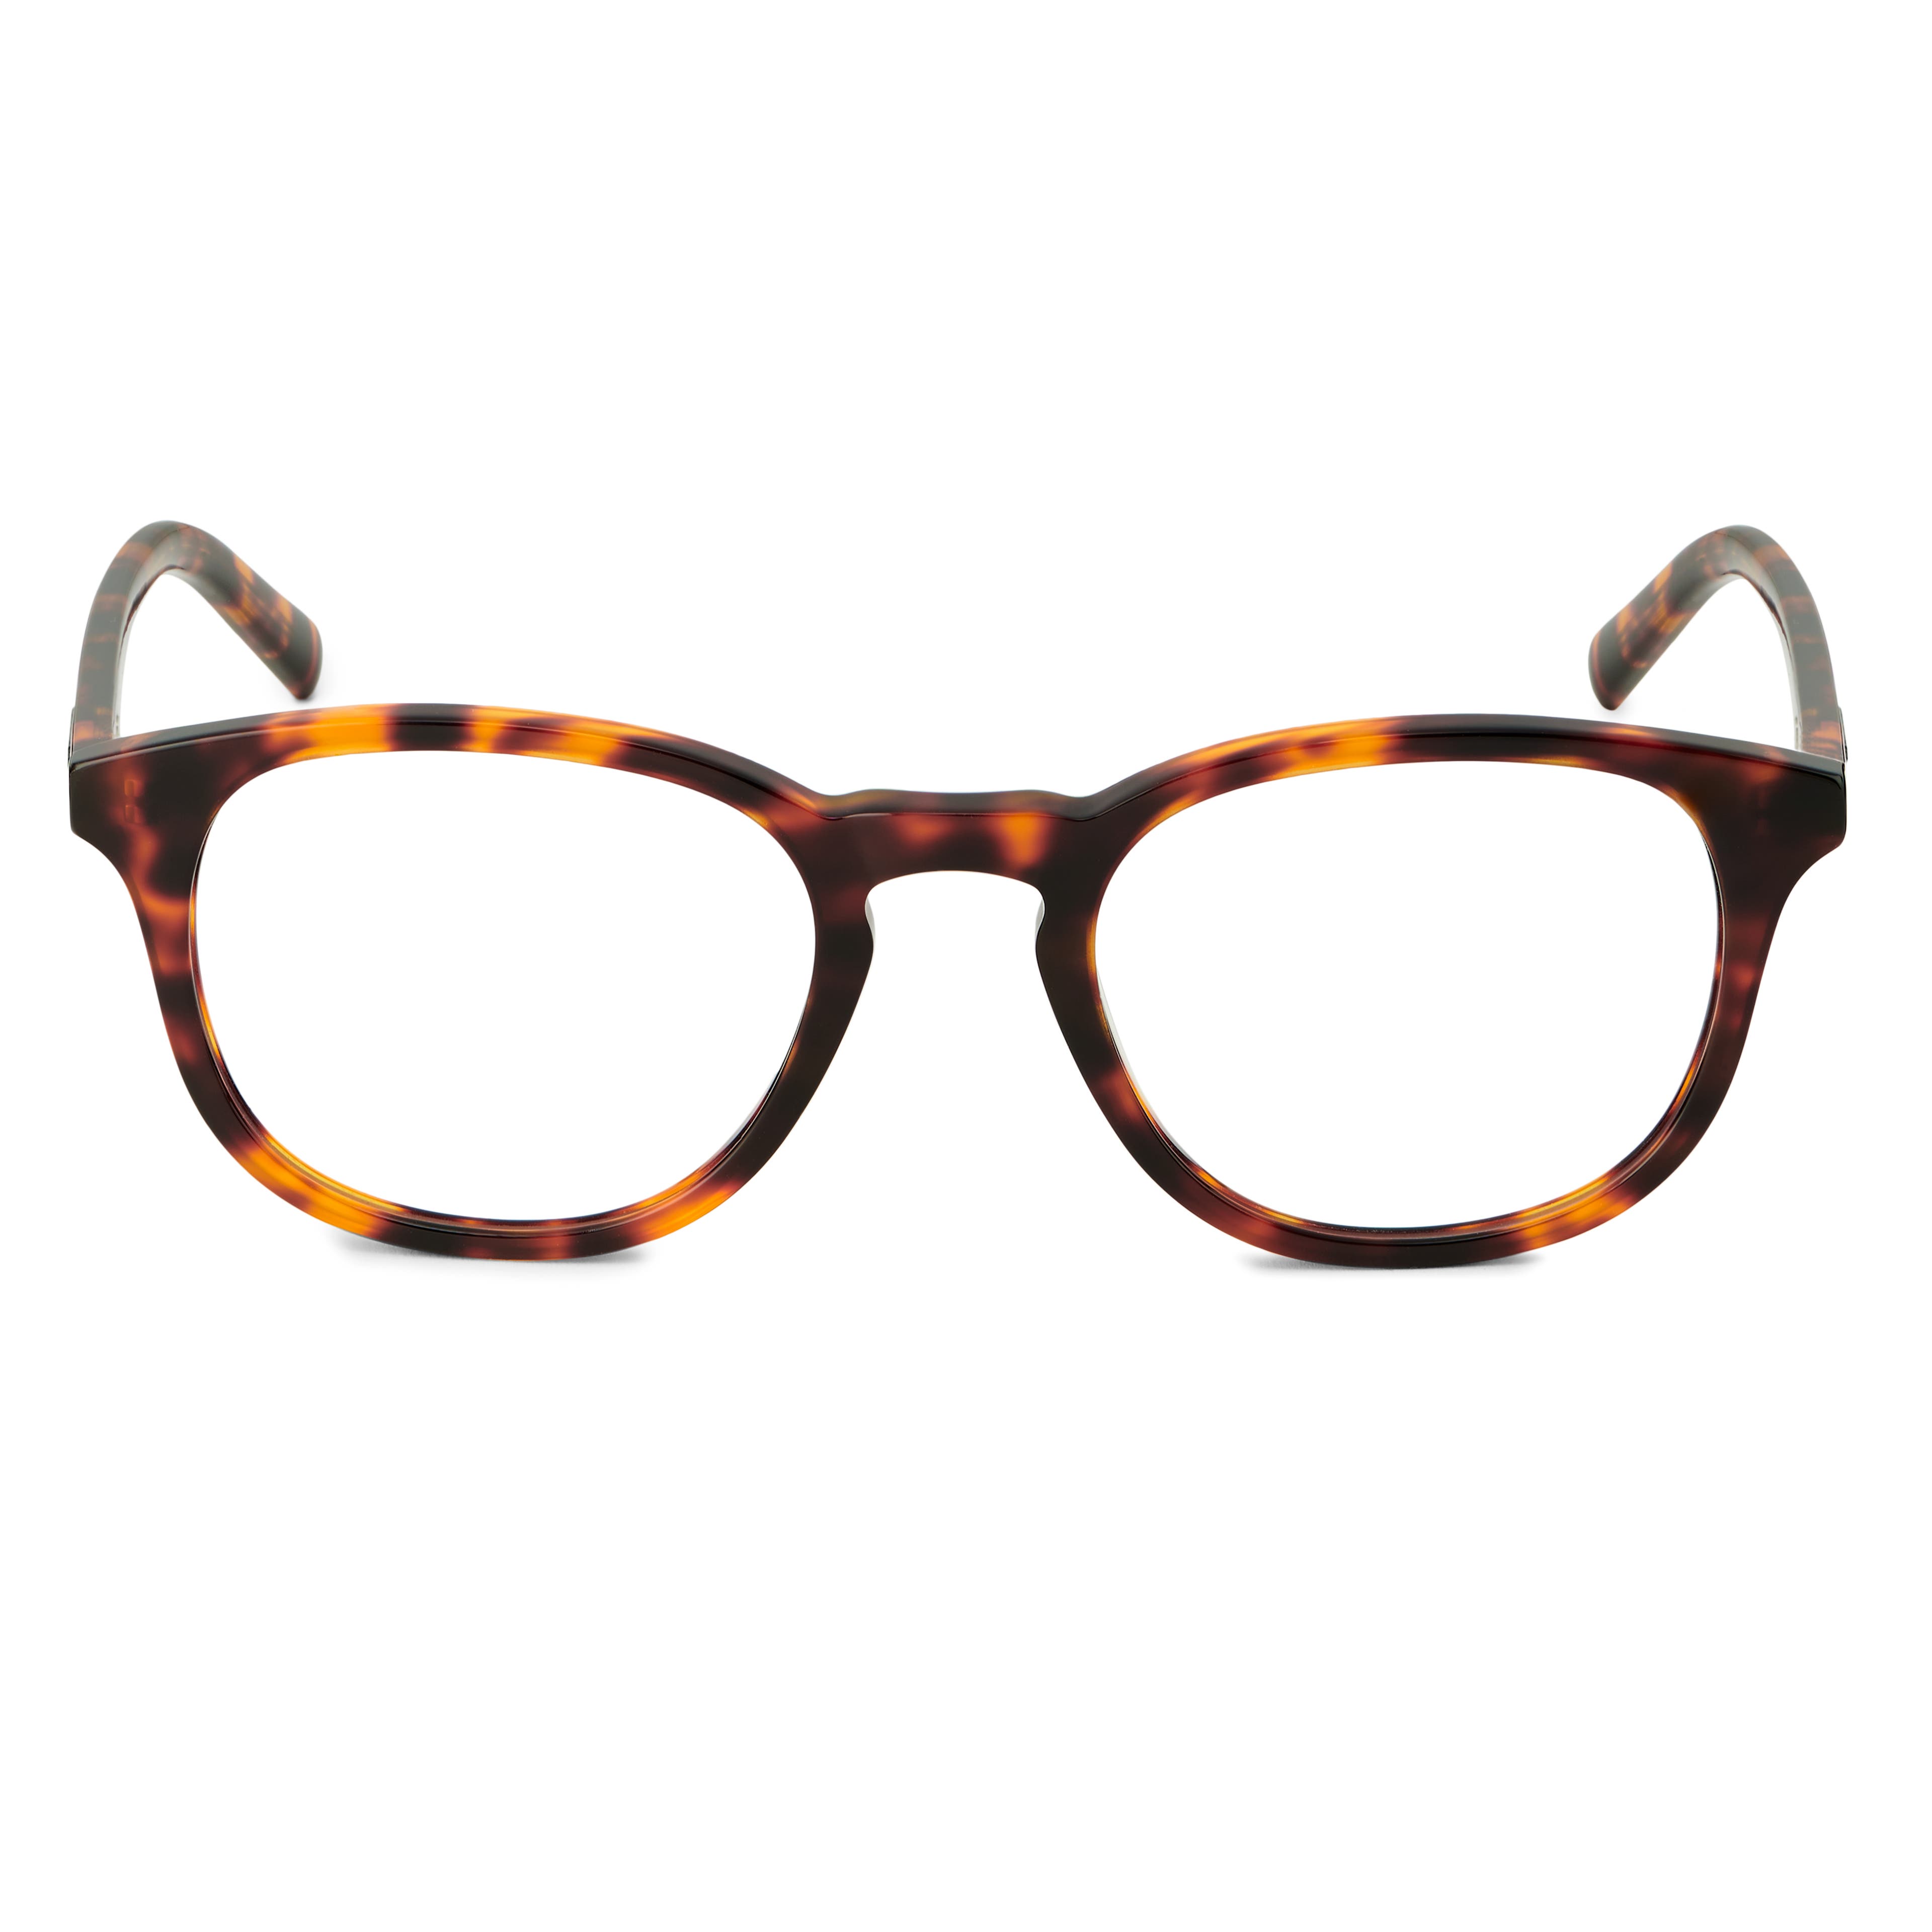 Warrick Thea teknőckeretes kékfény szűrős polarizált szemüveg